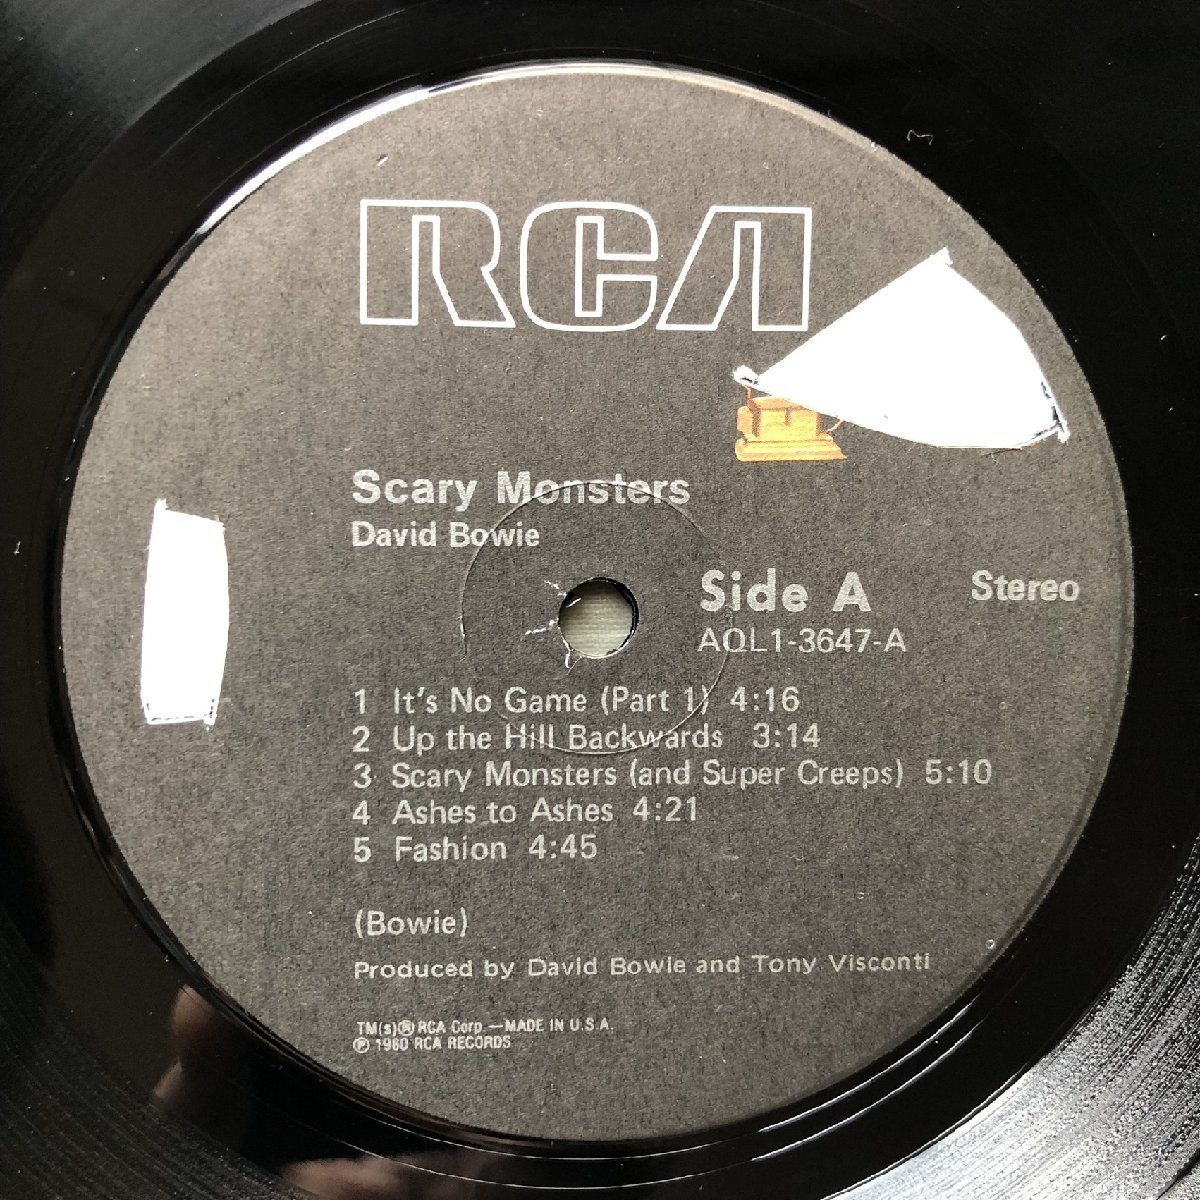 美盤 良ジャケ 1980年 STERING刻印 米国盤 デビッド・ボウイ David Bowie LPレコード スケアリー・モンスターズ Scary Monsters Discovery_画像7